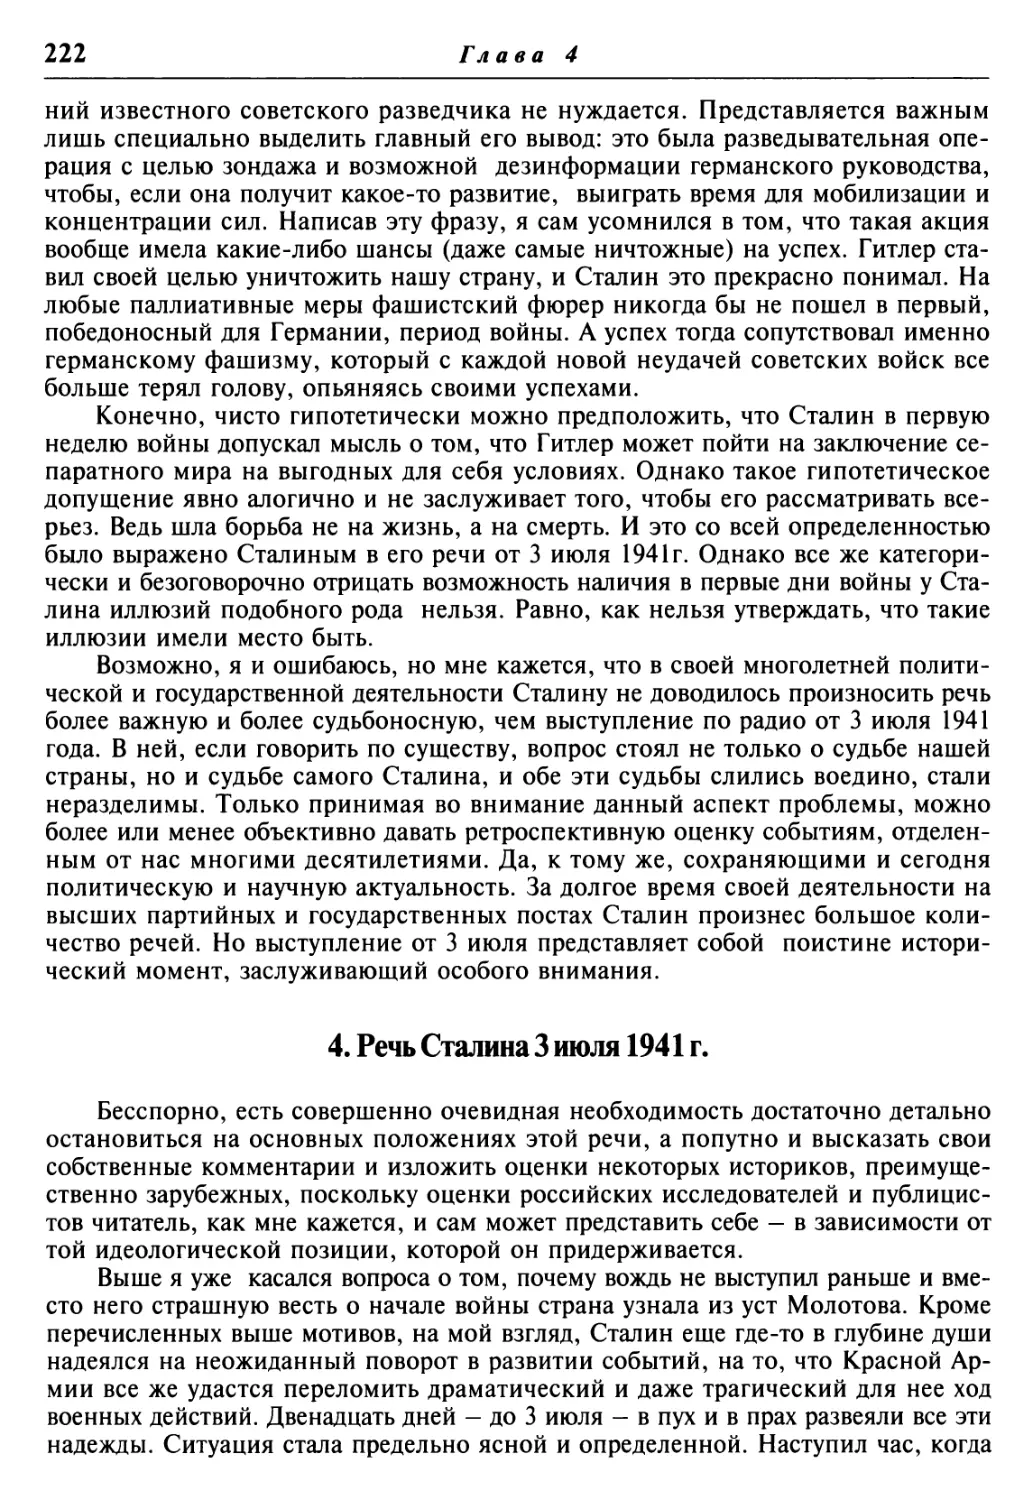 4. Речь Сталина 3 июля 1941 г